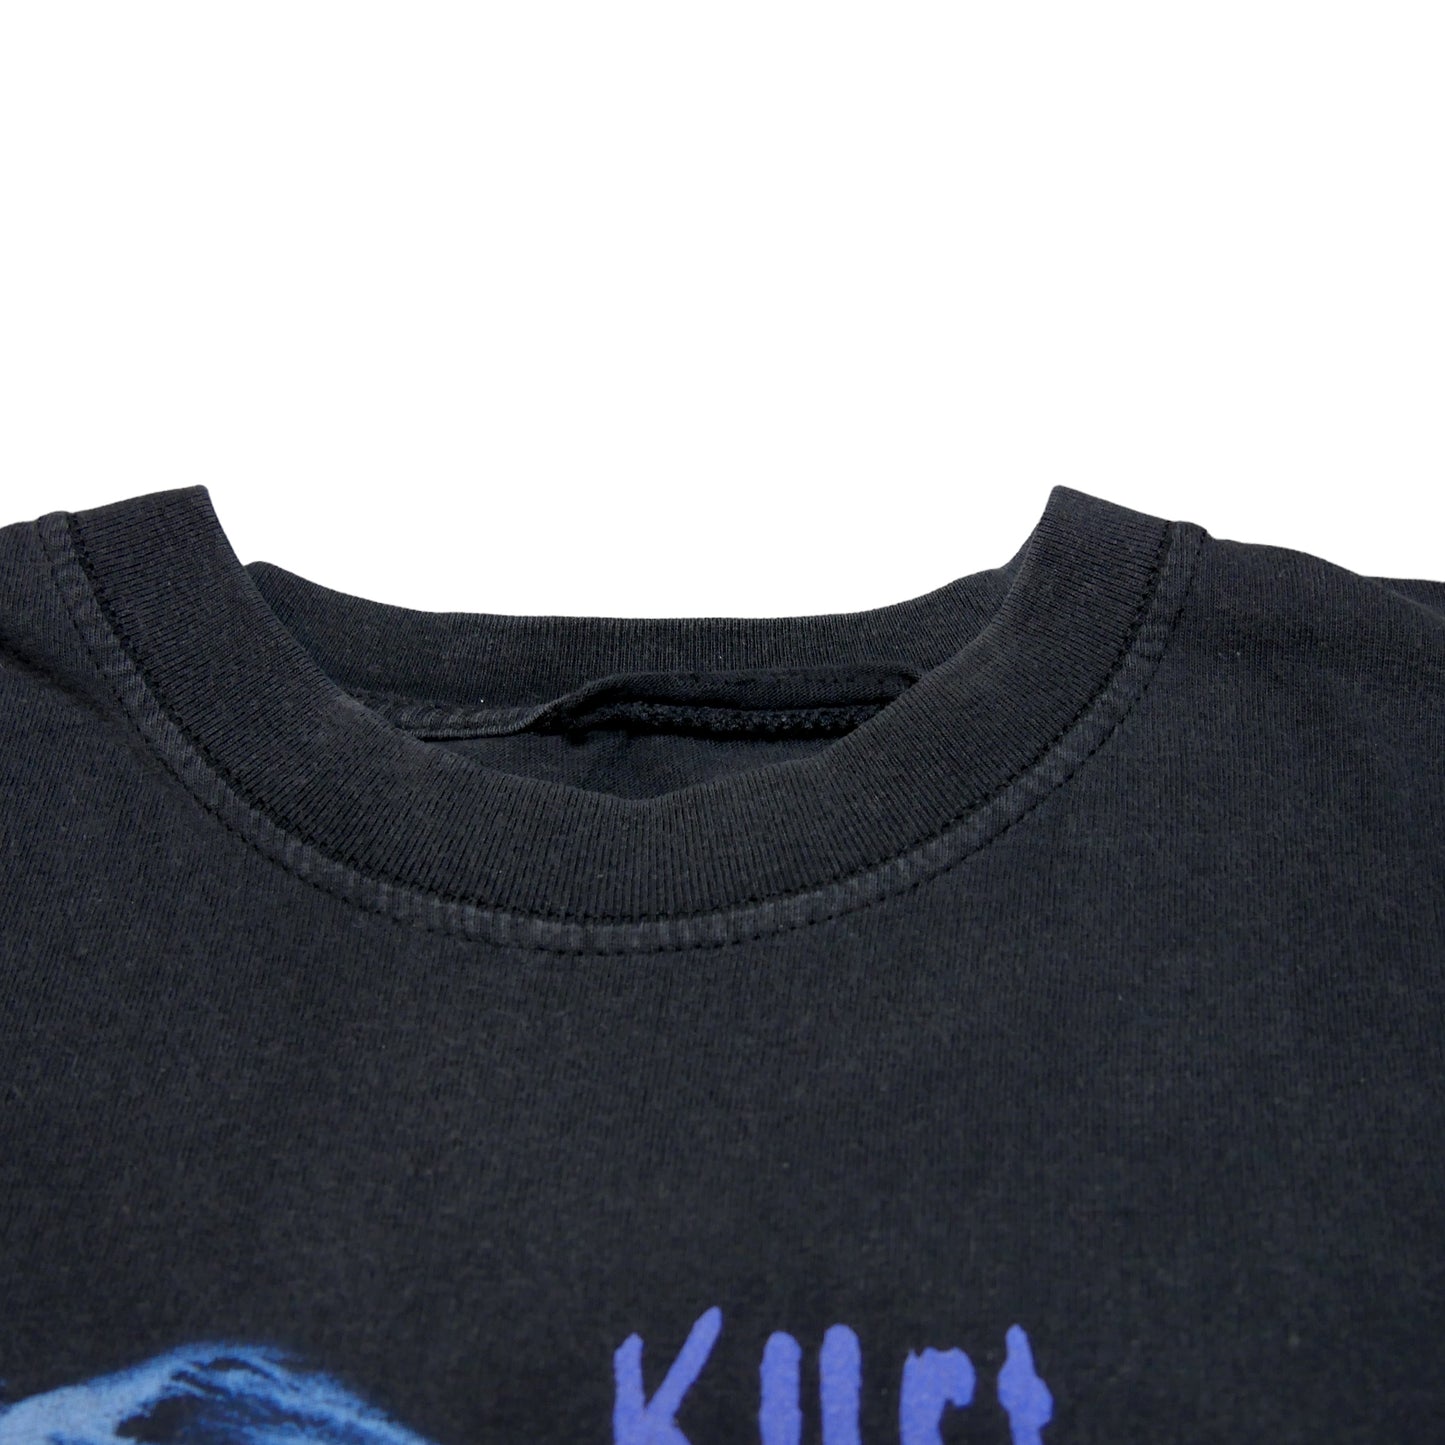 Kurt Cobain End Of Music Poem Shirt